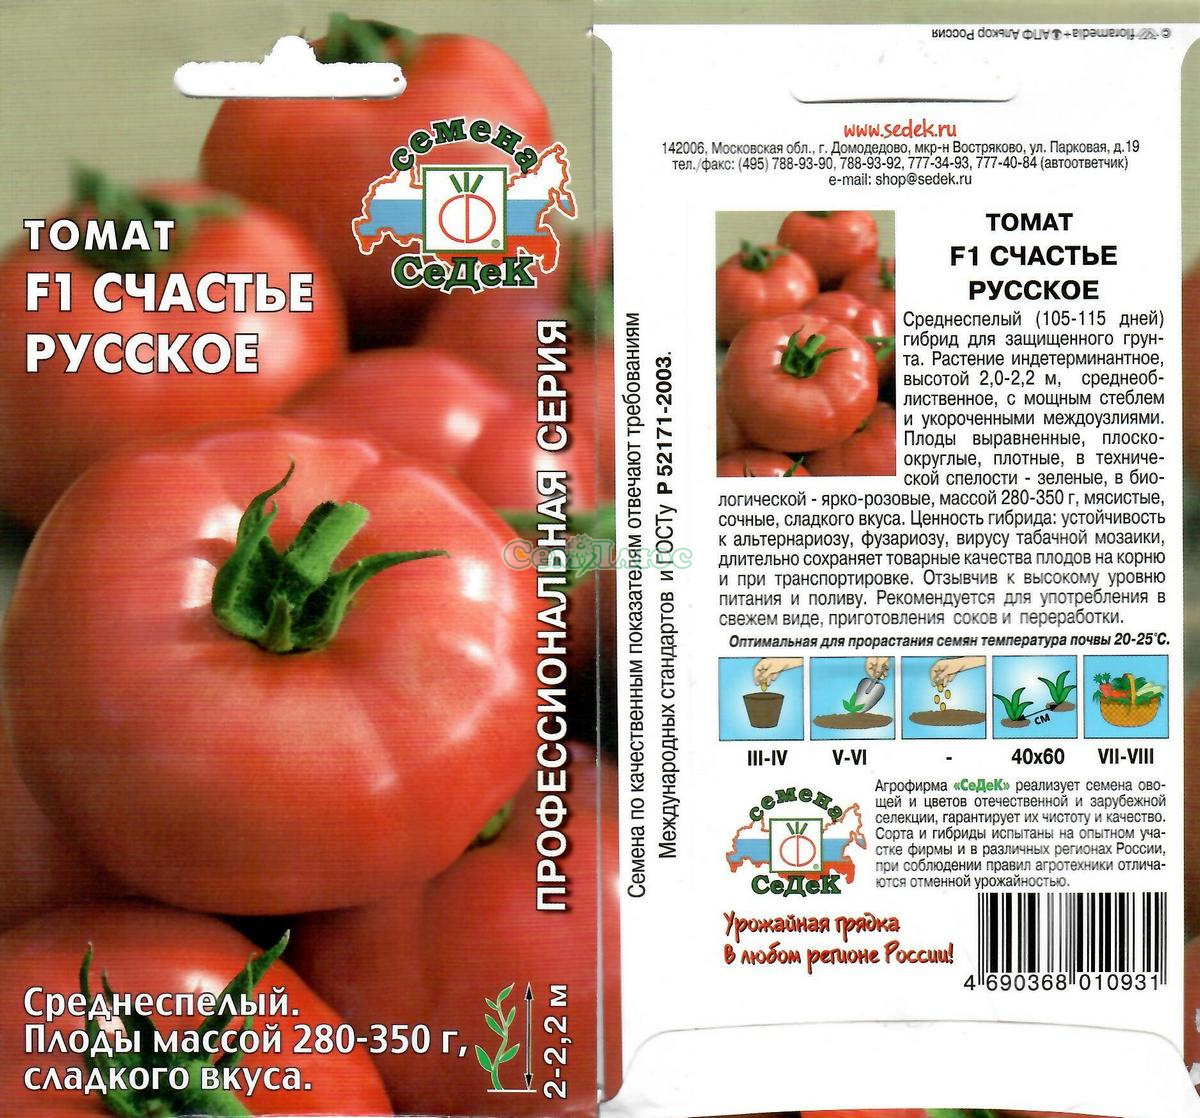 Описание и характеристика томата Русское счастье F1, его урожайность и выращивание